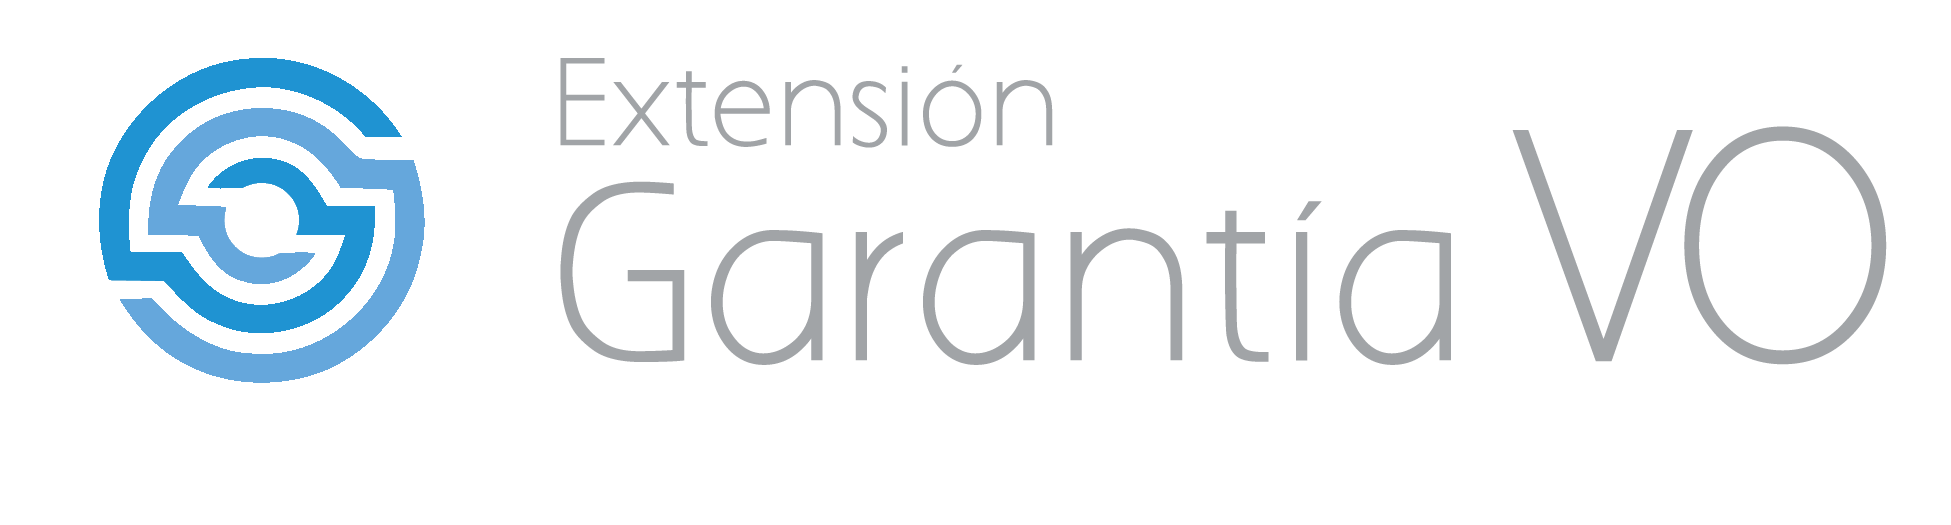 Extensión Garantía VO Logo